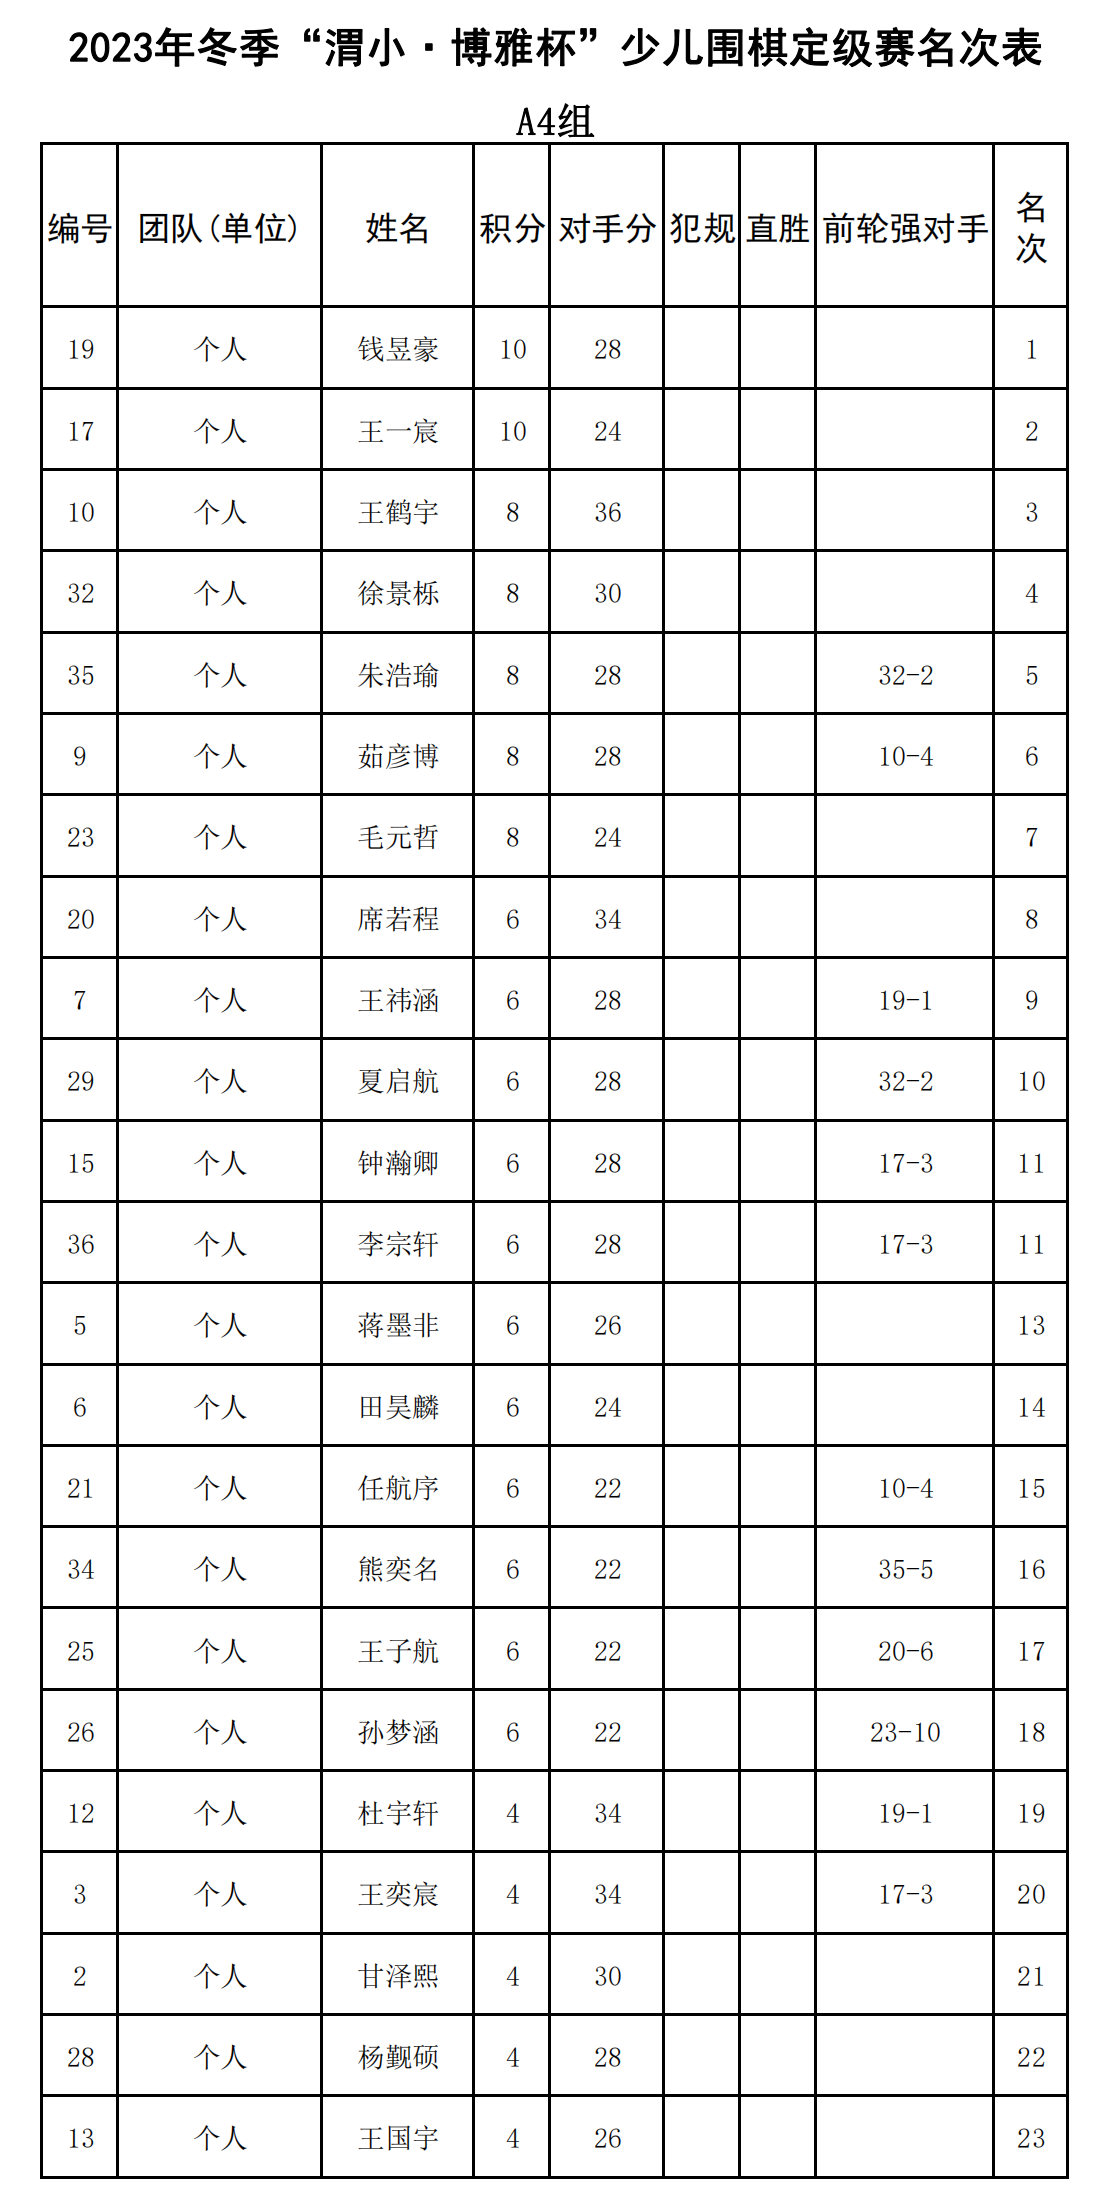 2023年冬季“渭小·博雅杯”少儿围棋定级赛A4组(名次表)_00.png